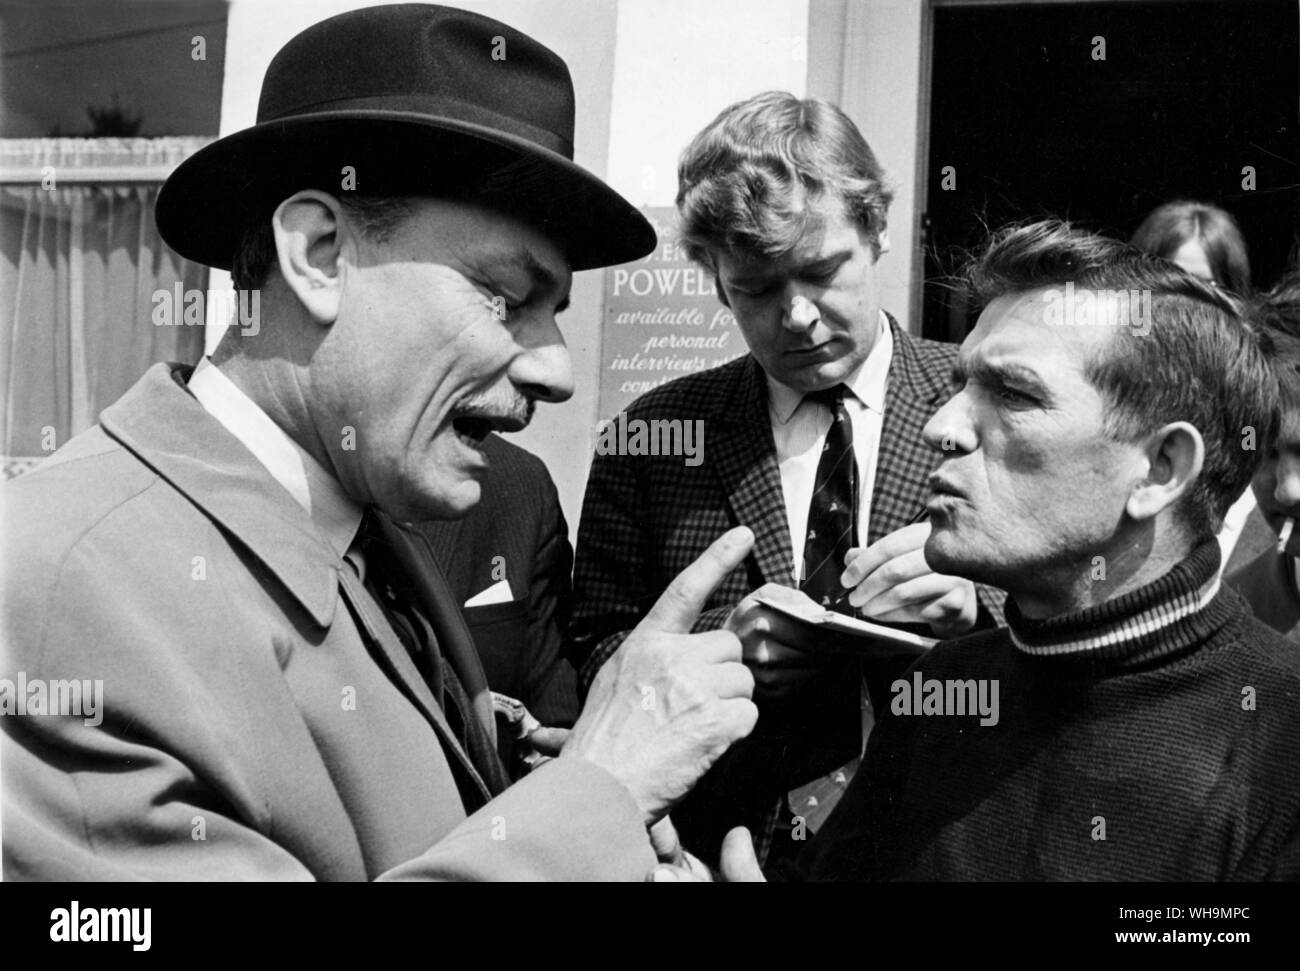 El 4 de mayo de 1968: Enoch Powell (1912- ), político conservador británico en serio la conversación con uno de sus mandantes, Wolverhampton. Foto de stock